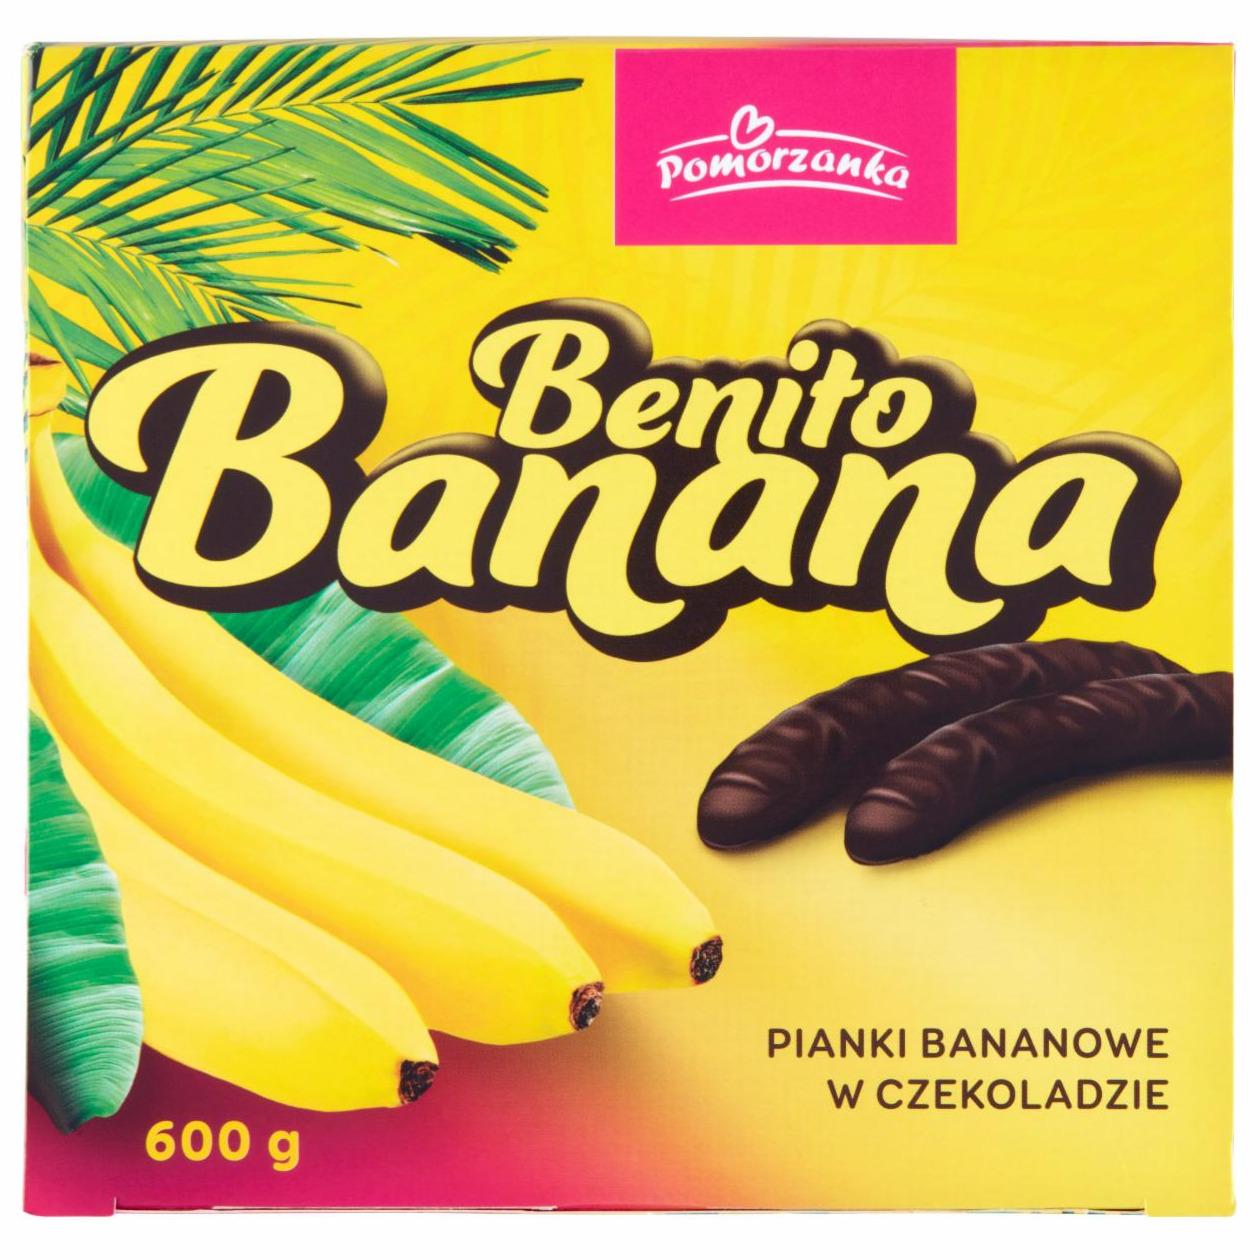 Zdjęcia - Benito Banana Pianki bananowe w czekoladzie Pomorzanka